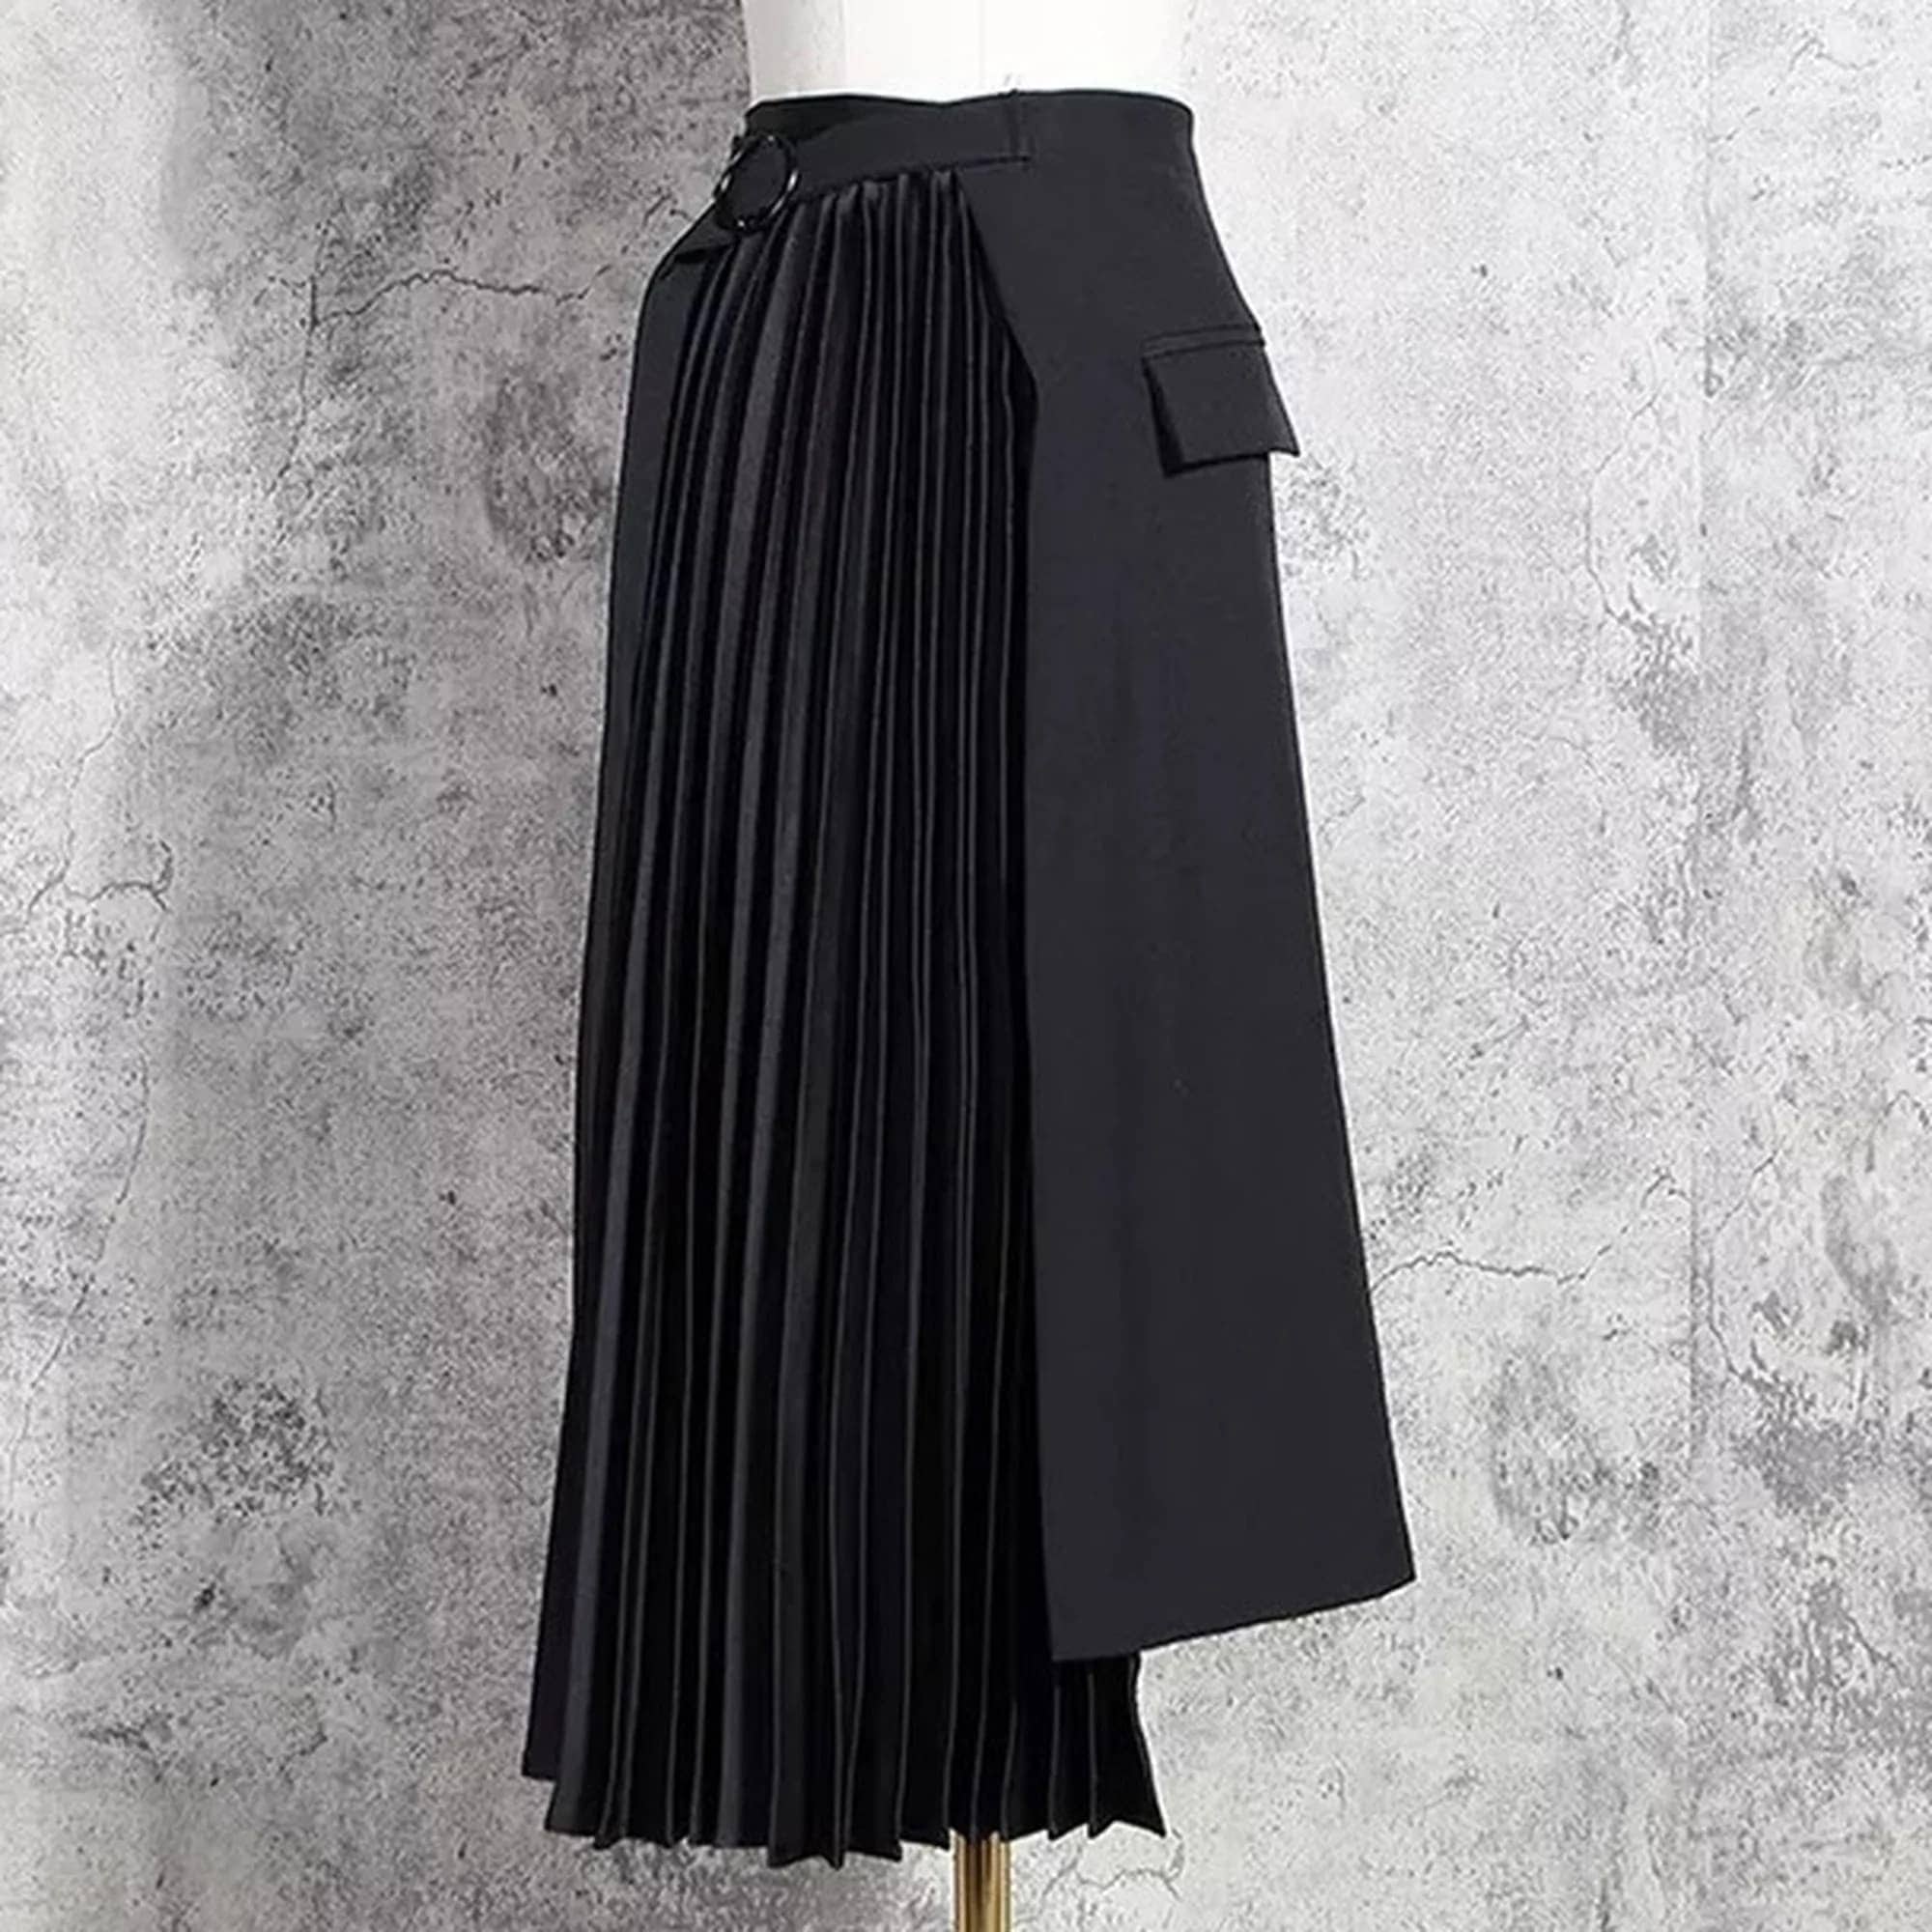 男の子向けプレゼント集結 個性 不規則 デザイン プリーツ 巻きスカート 黒 お洒落 個性的なスカート ロングスカート サイズ:M